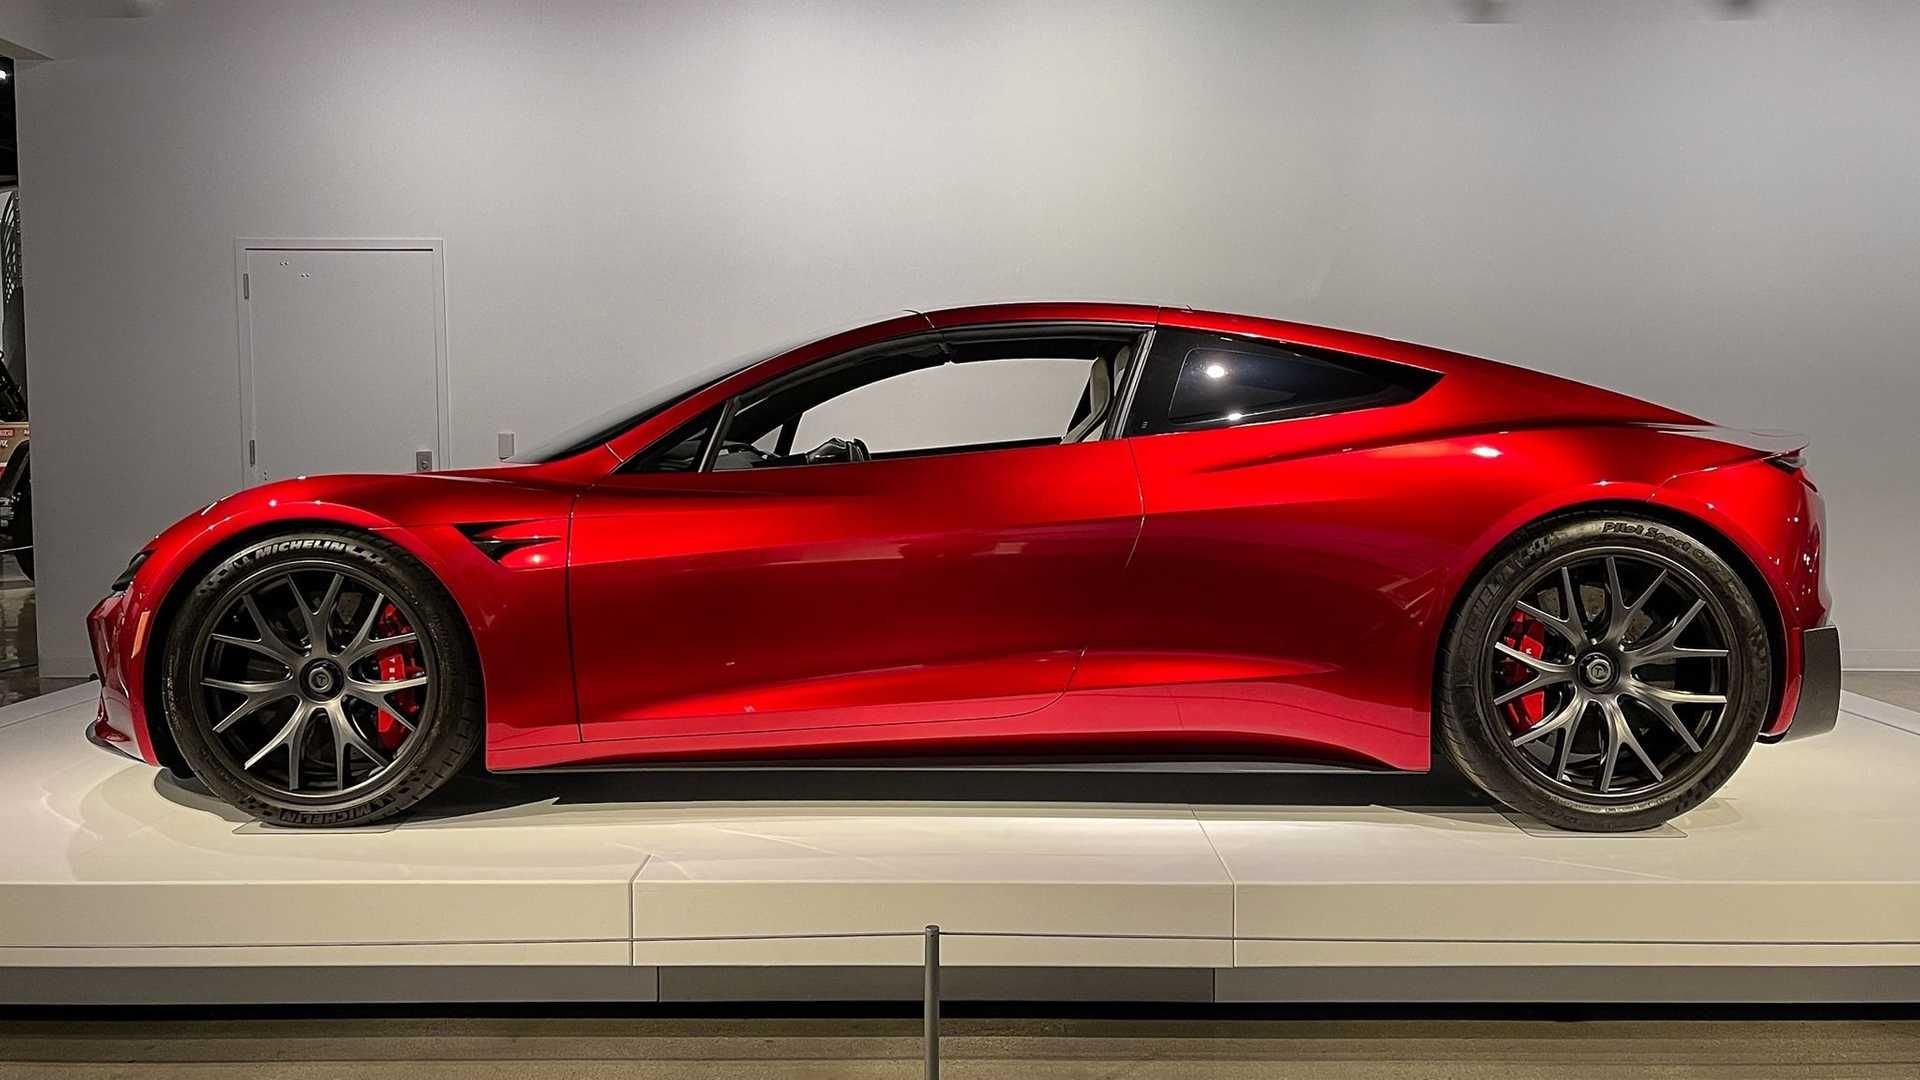 نمای جانبی خودروی الکتریکی تسلا رودستر / Tesla Roadster قرمز رنگ در موزه پترسن